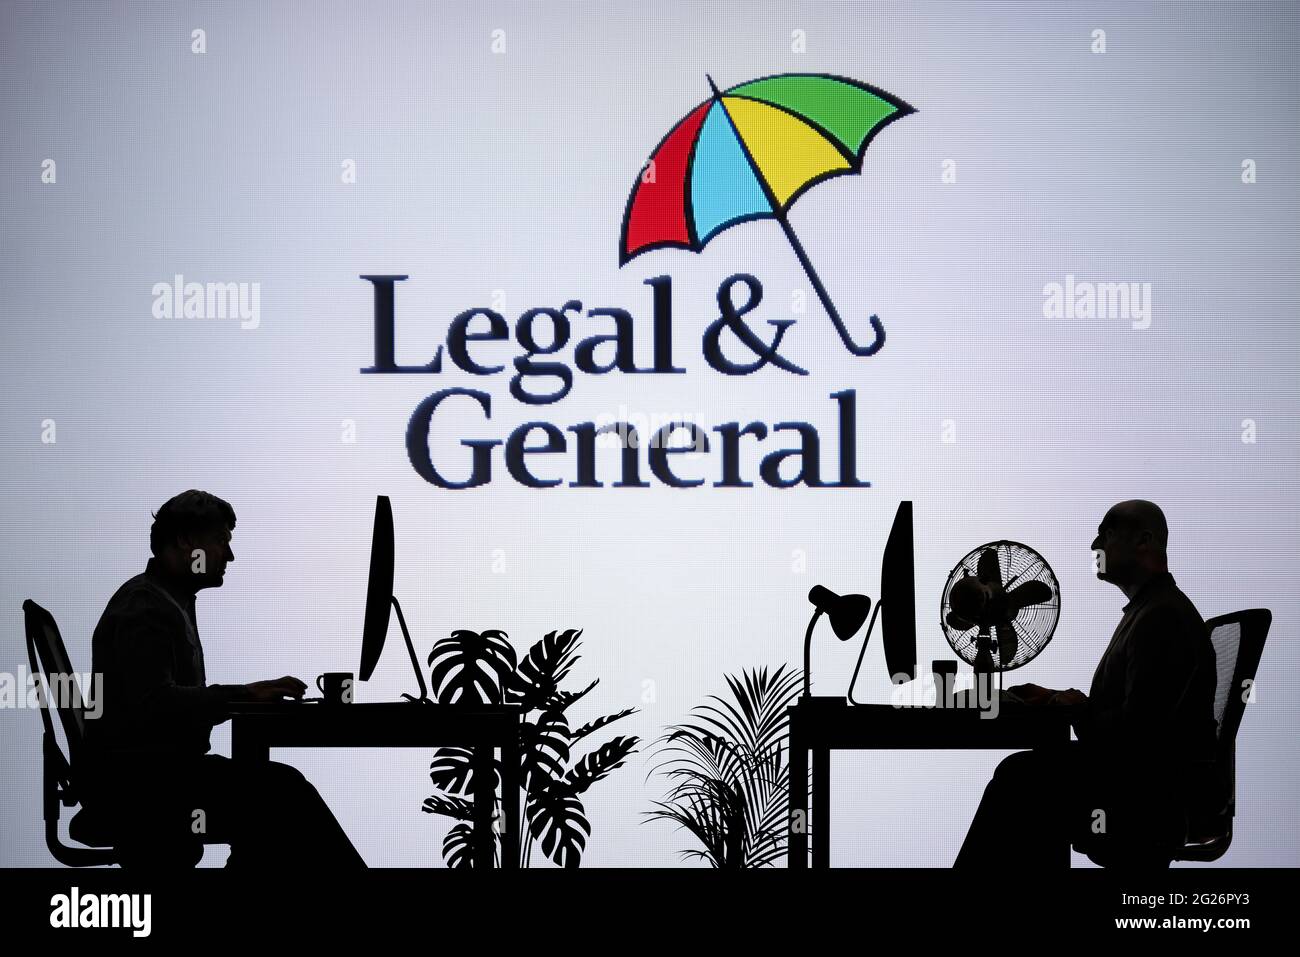 El logotipo Legal y General se ve en una pantalla LED en segundo plano, mientras que dos personas con siluetas trabajan en un entorno de oficina (sólo para uso editorial) Foto de stock